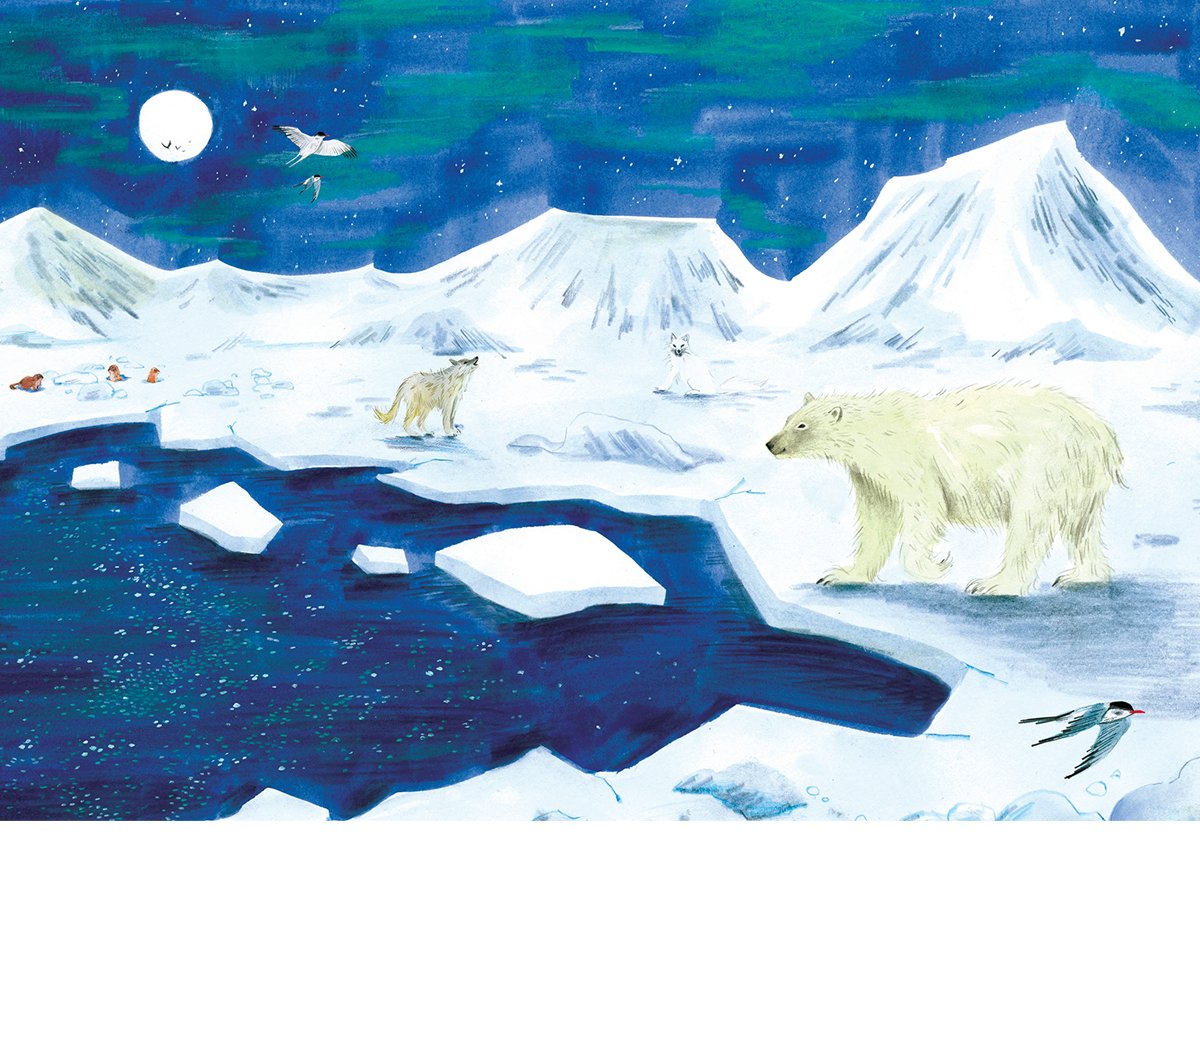 harriet-hobday-polar-scene-illustration.jpg